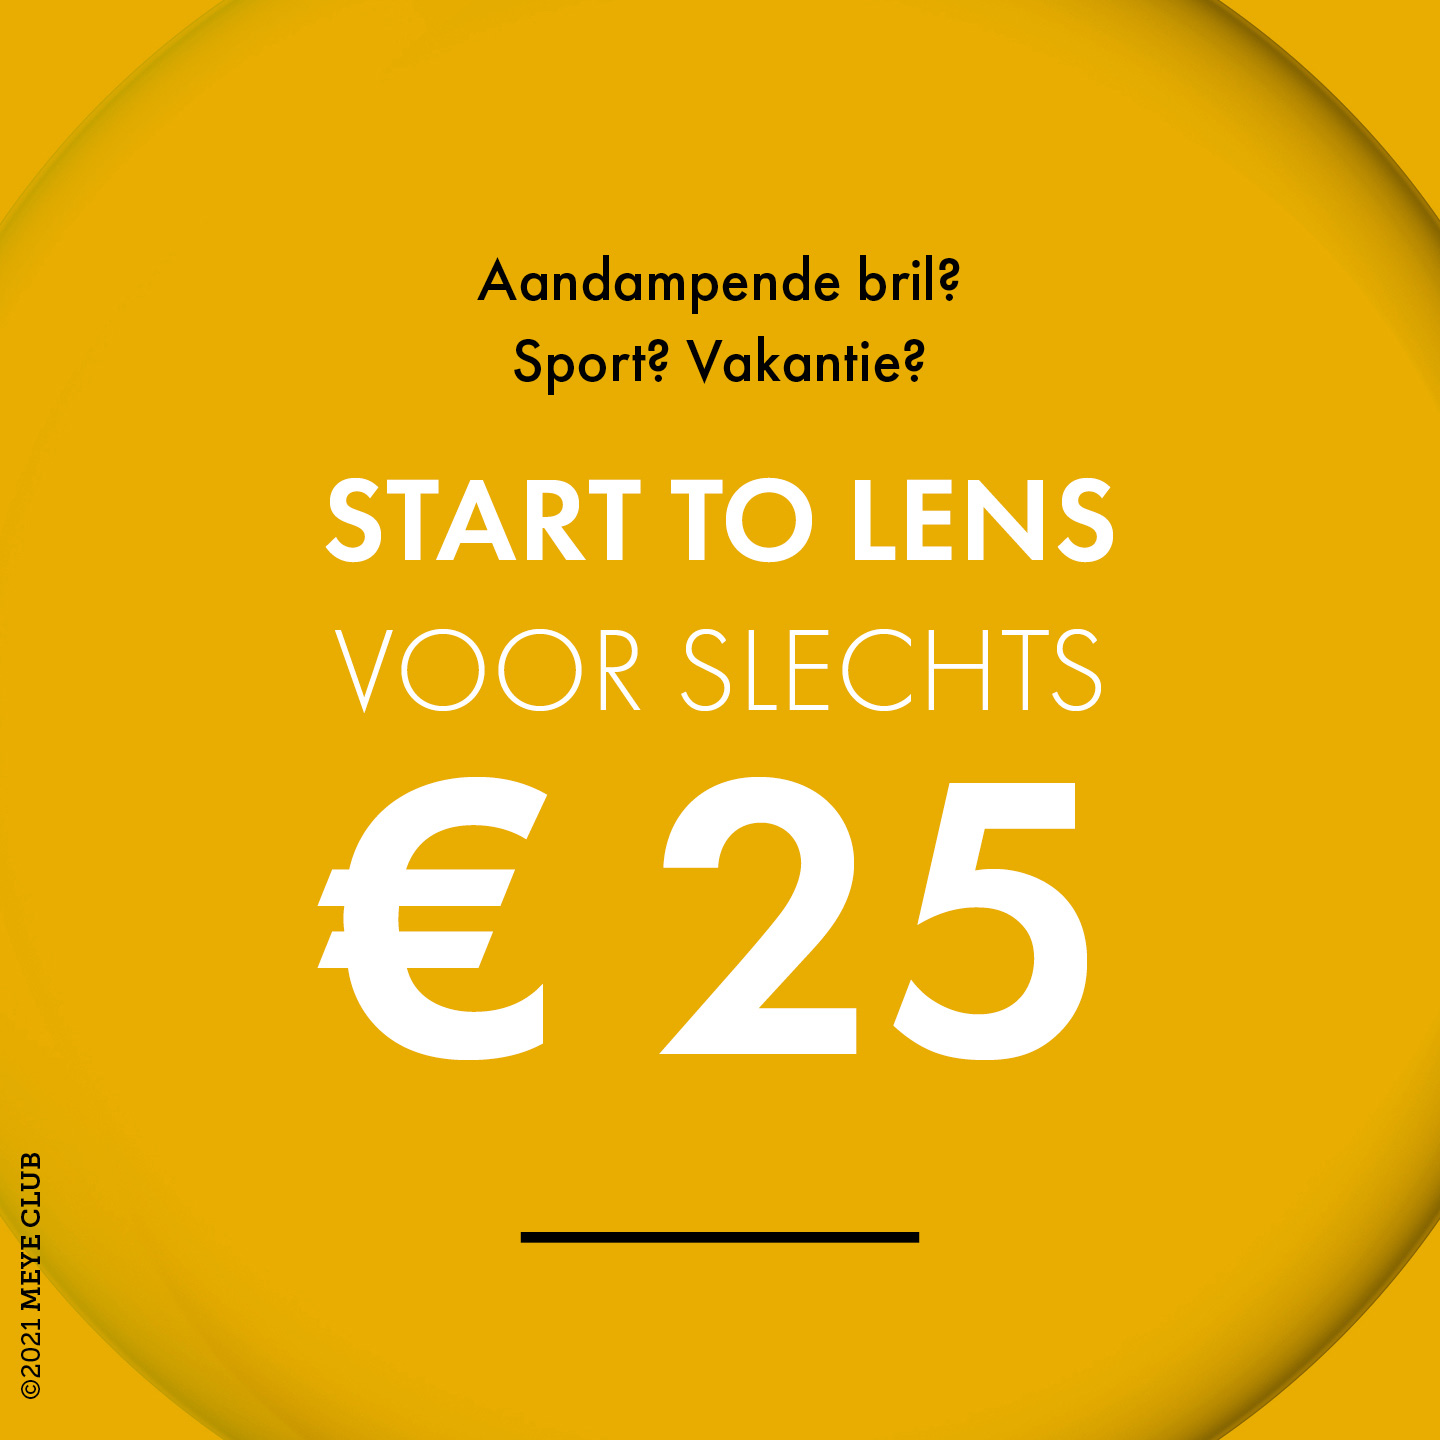 Start to lens voor slechts € 25